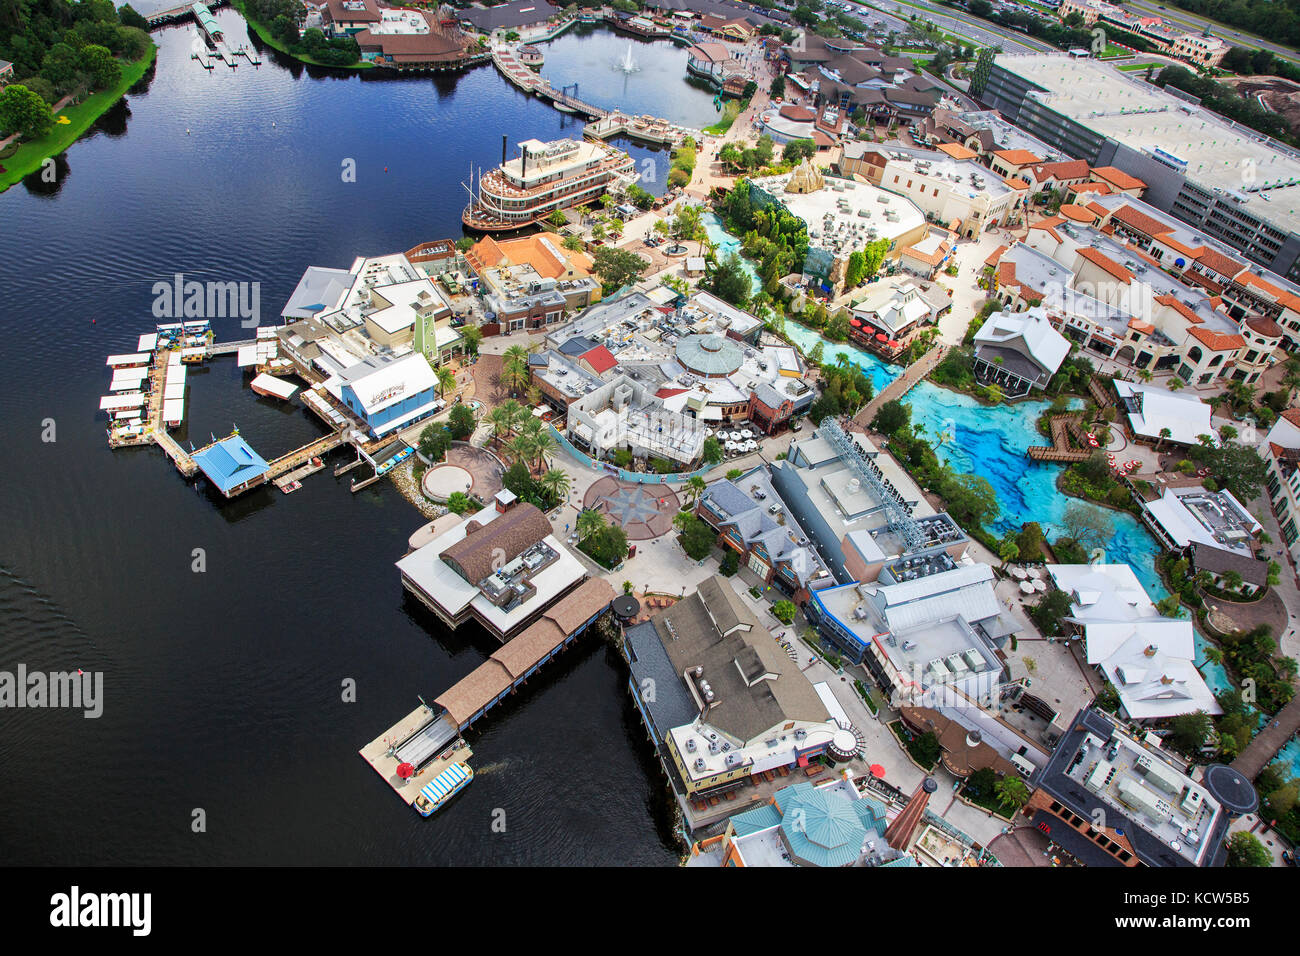 Vue aérienne du parc à thème Disney Springs, Orlando, Floride, USA Banque D'Images